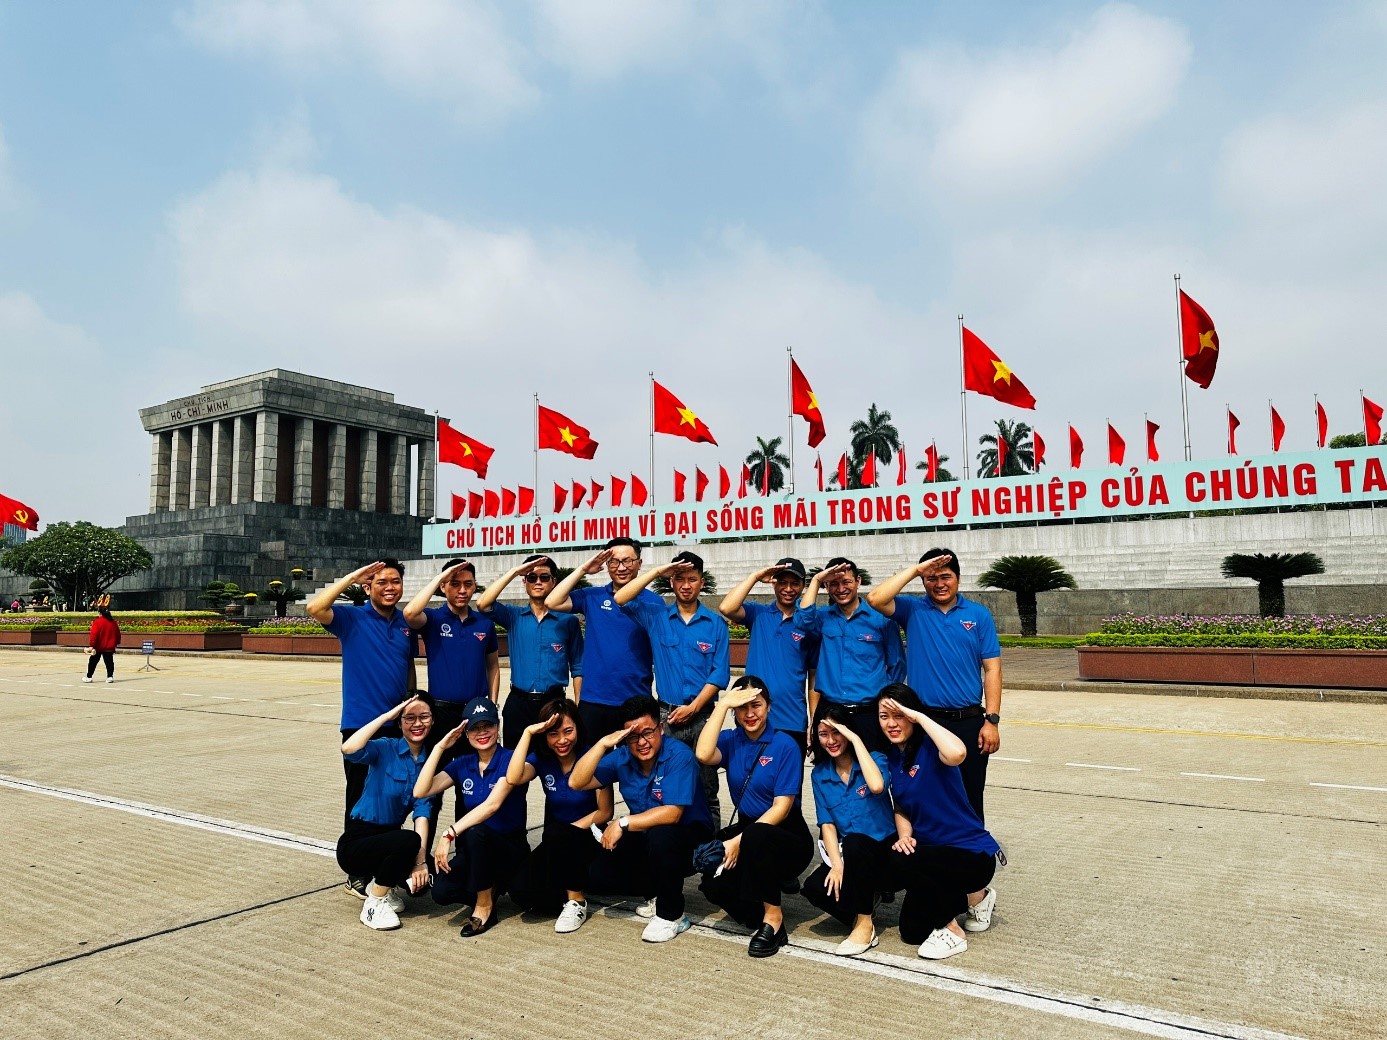 Đoàn thanh niên ATTECH tổ chức các hoạt động kỷ niệm 133 năm ngày sinh của Chủ tịch Hồ Chí Minh (19/05/1890-19/05/2023)